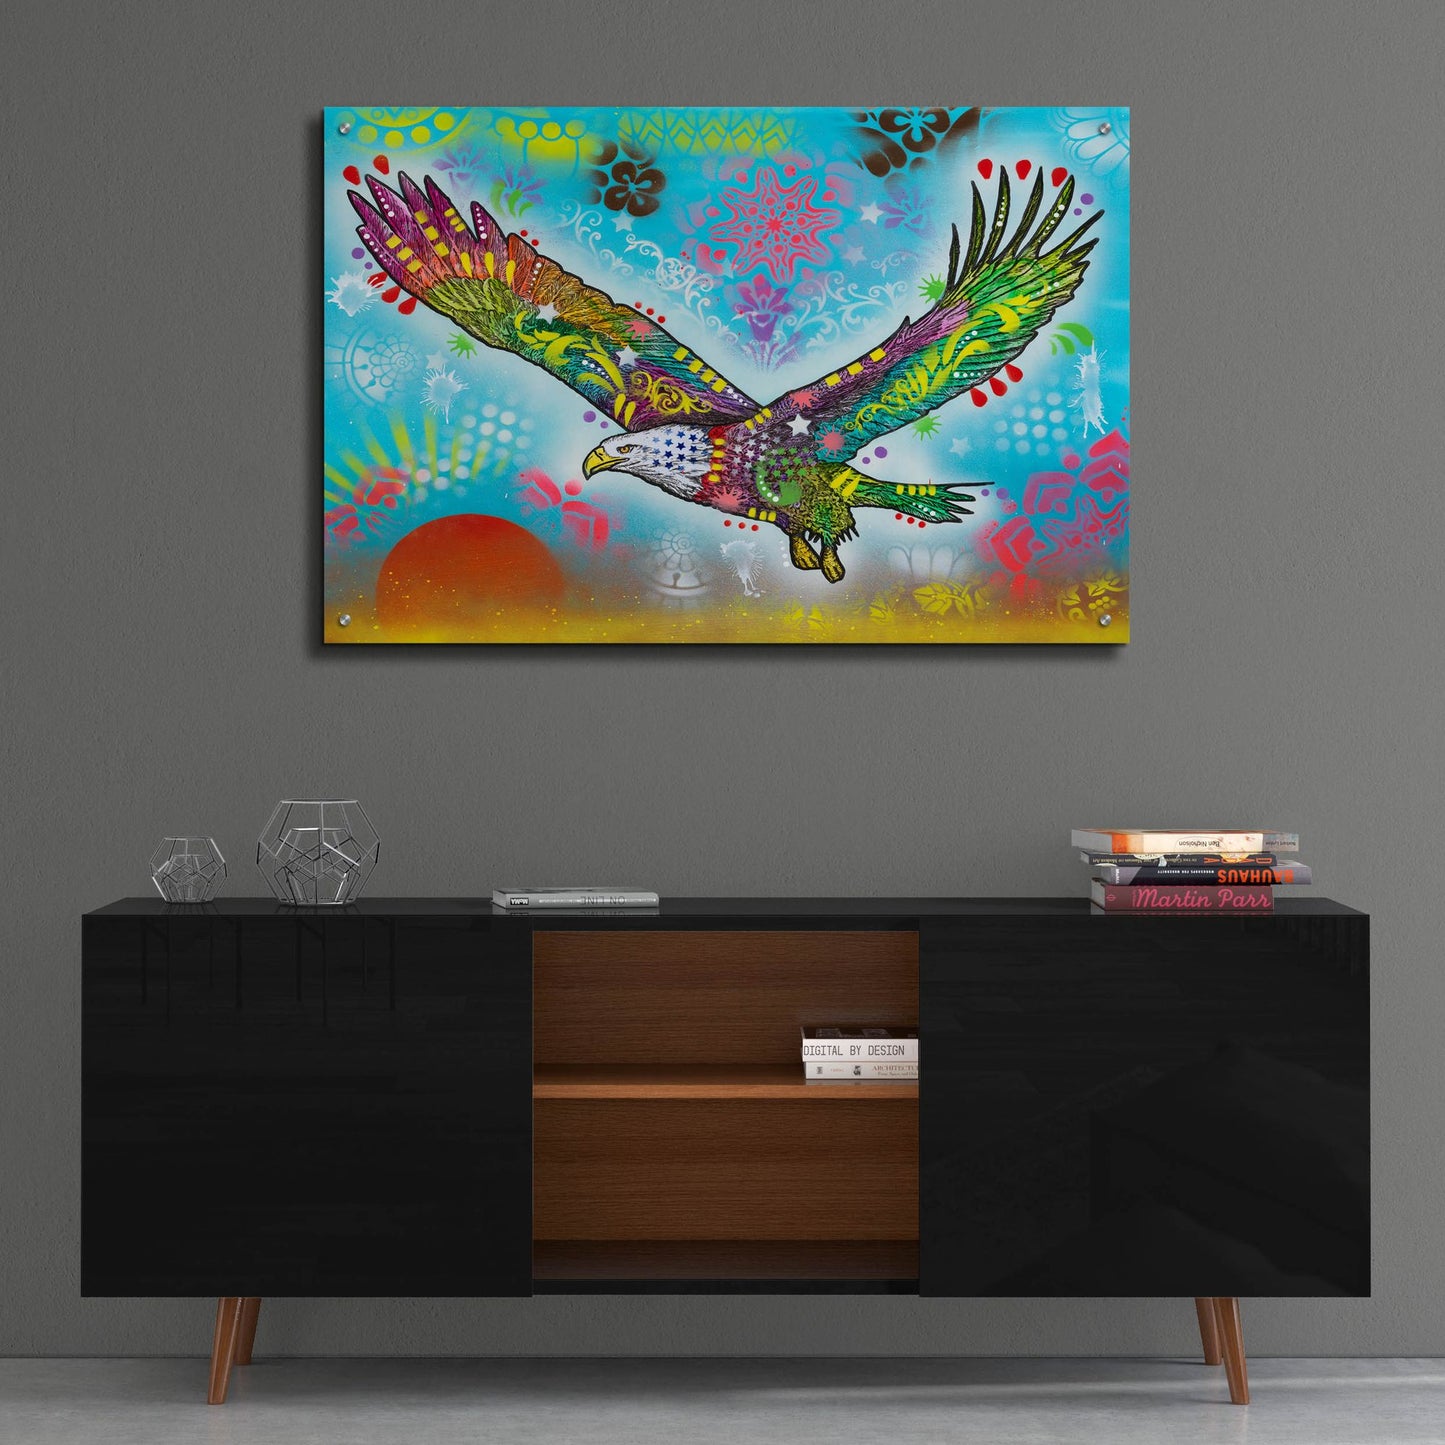 Epic Art 'In Flight' by Dean Russo, Acrylic Glass Wall Art,36x24